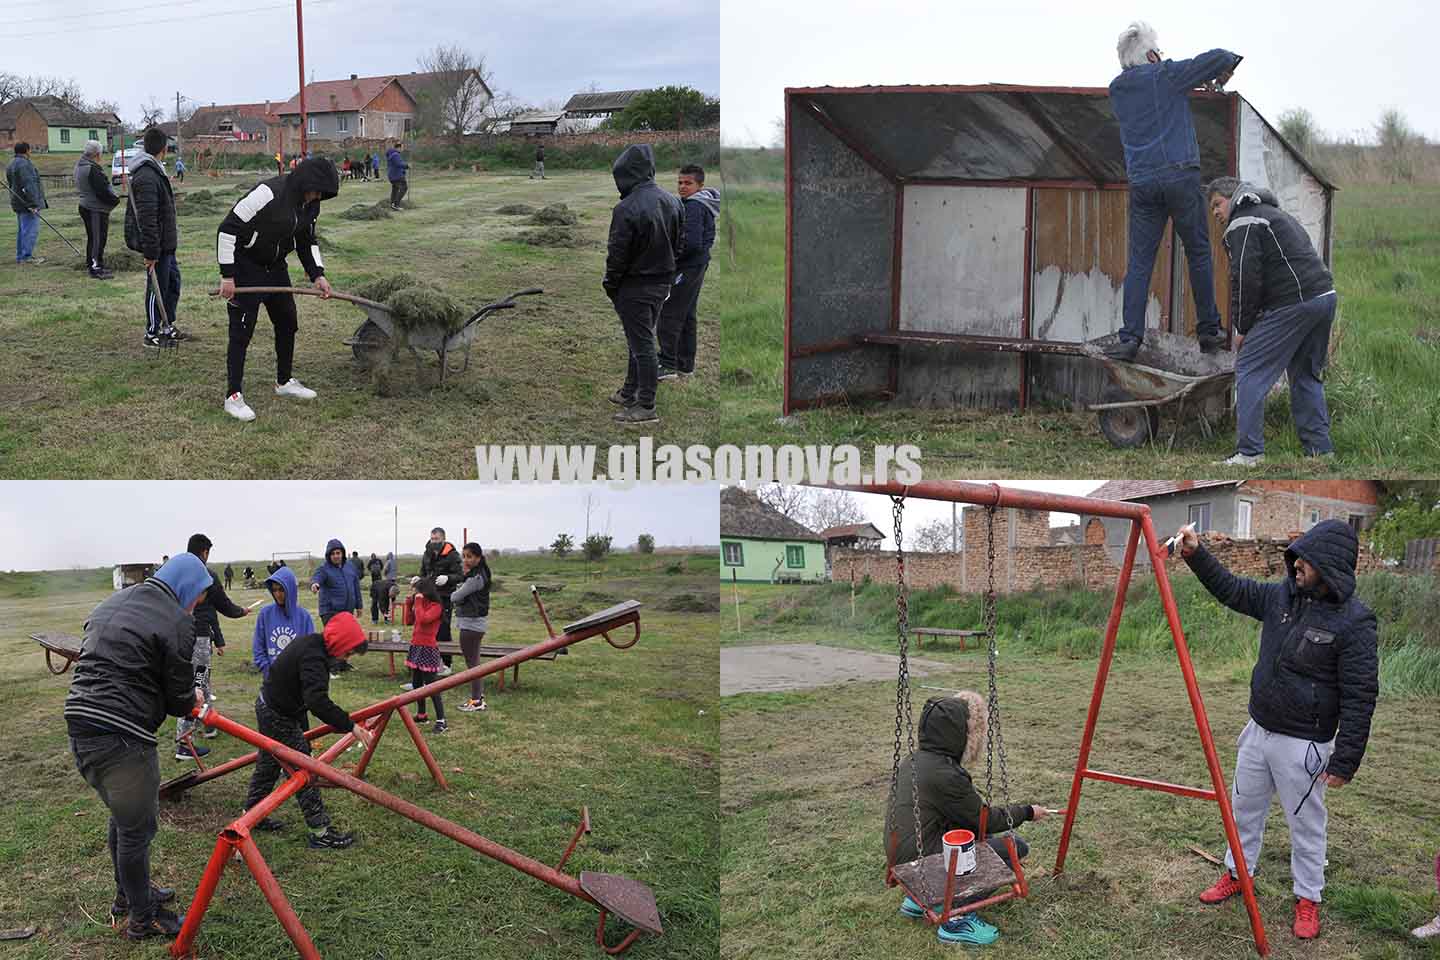 Romsko naselje u Sefkerinu: Uz podršku lokalne samouprave volonteri renovirali dečje igralište